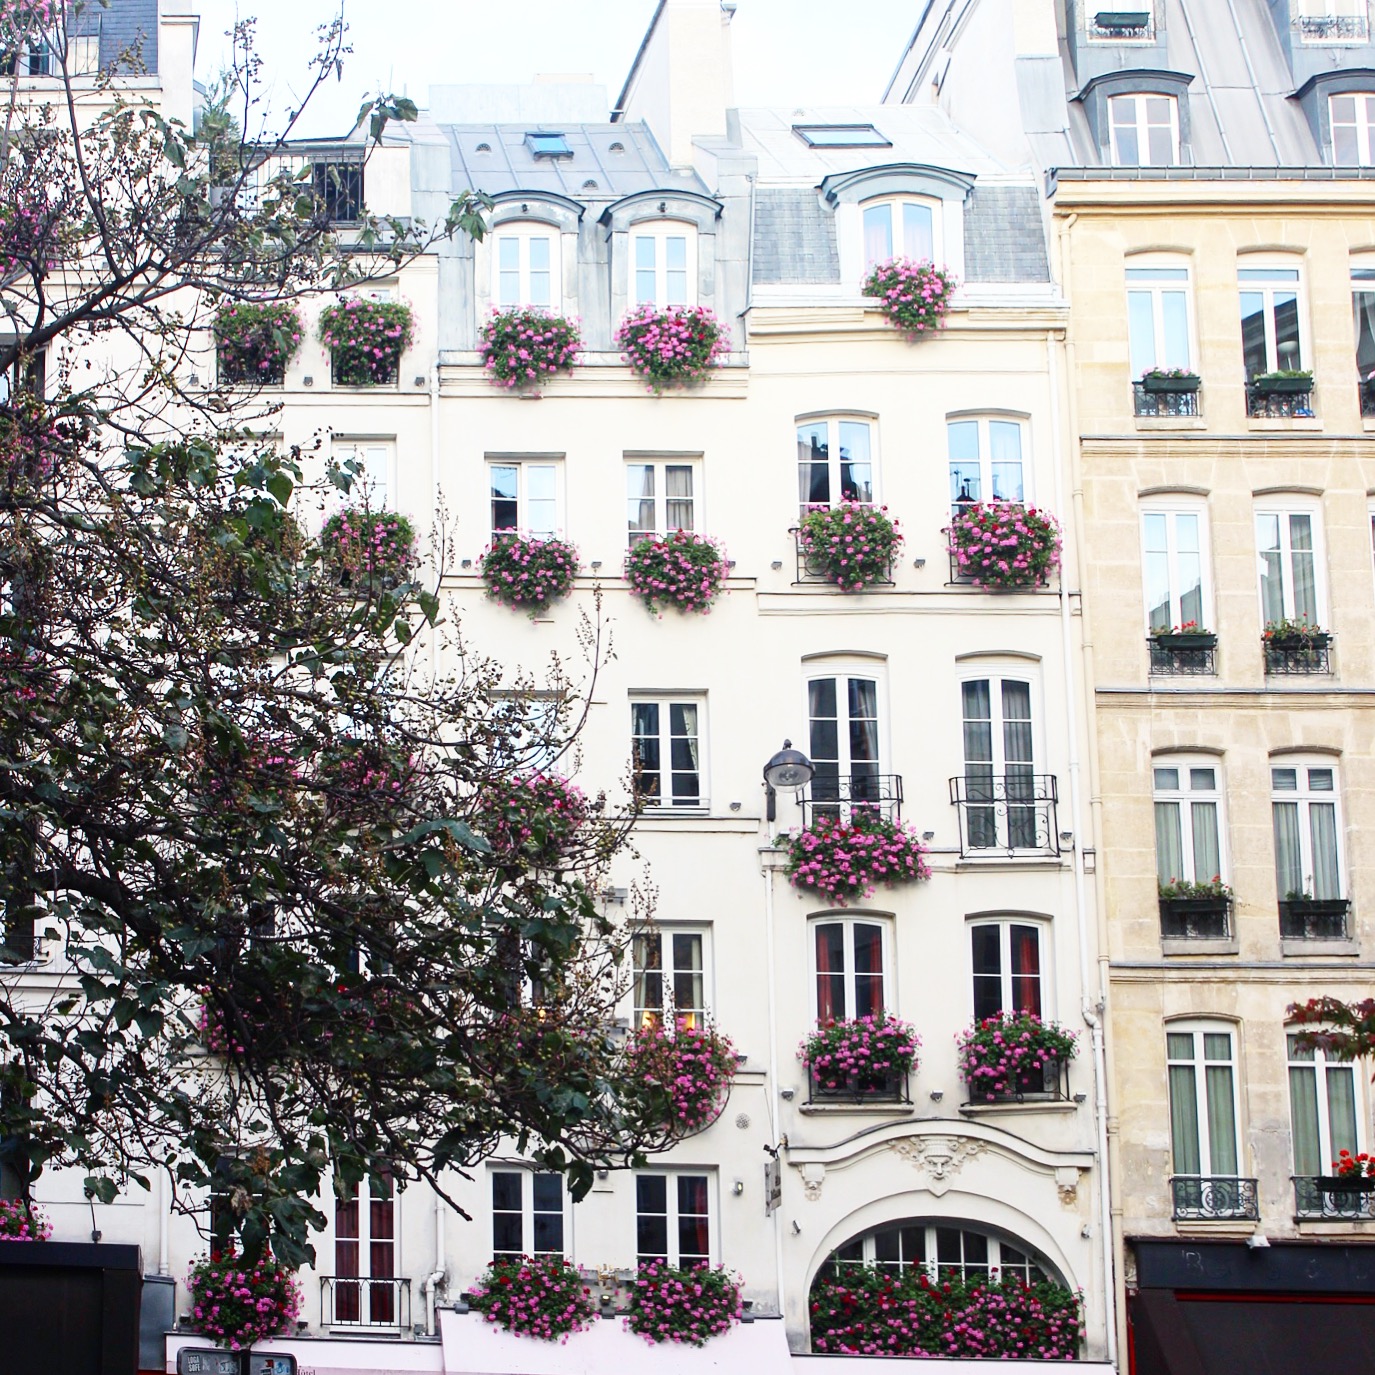 How to Instagram Paris Like A Parisian